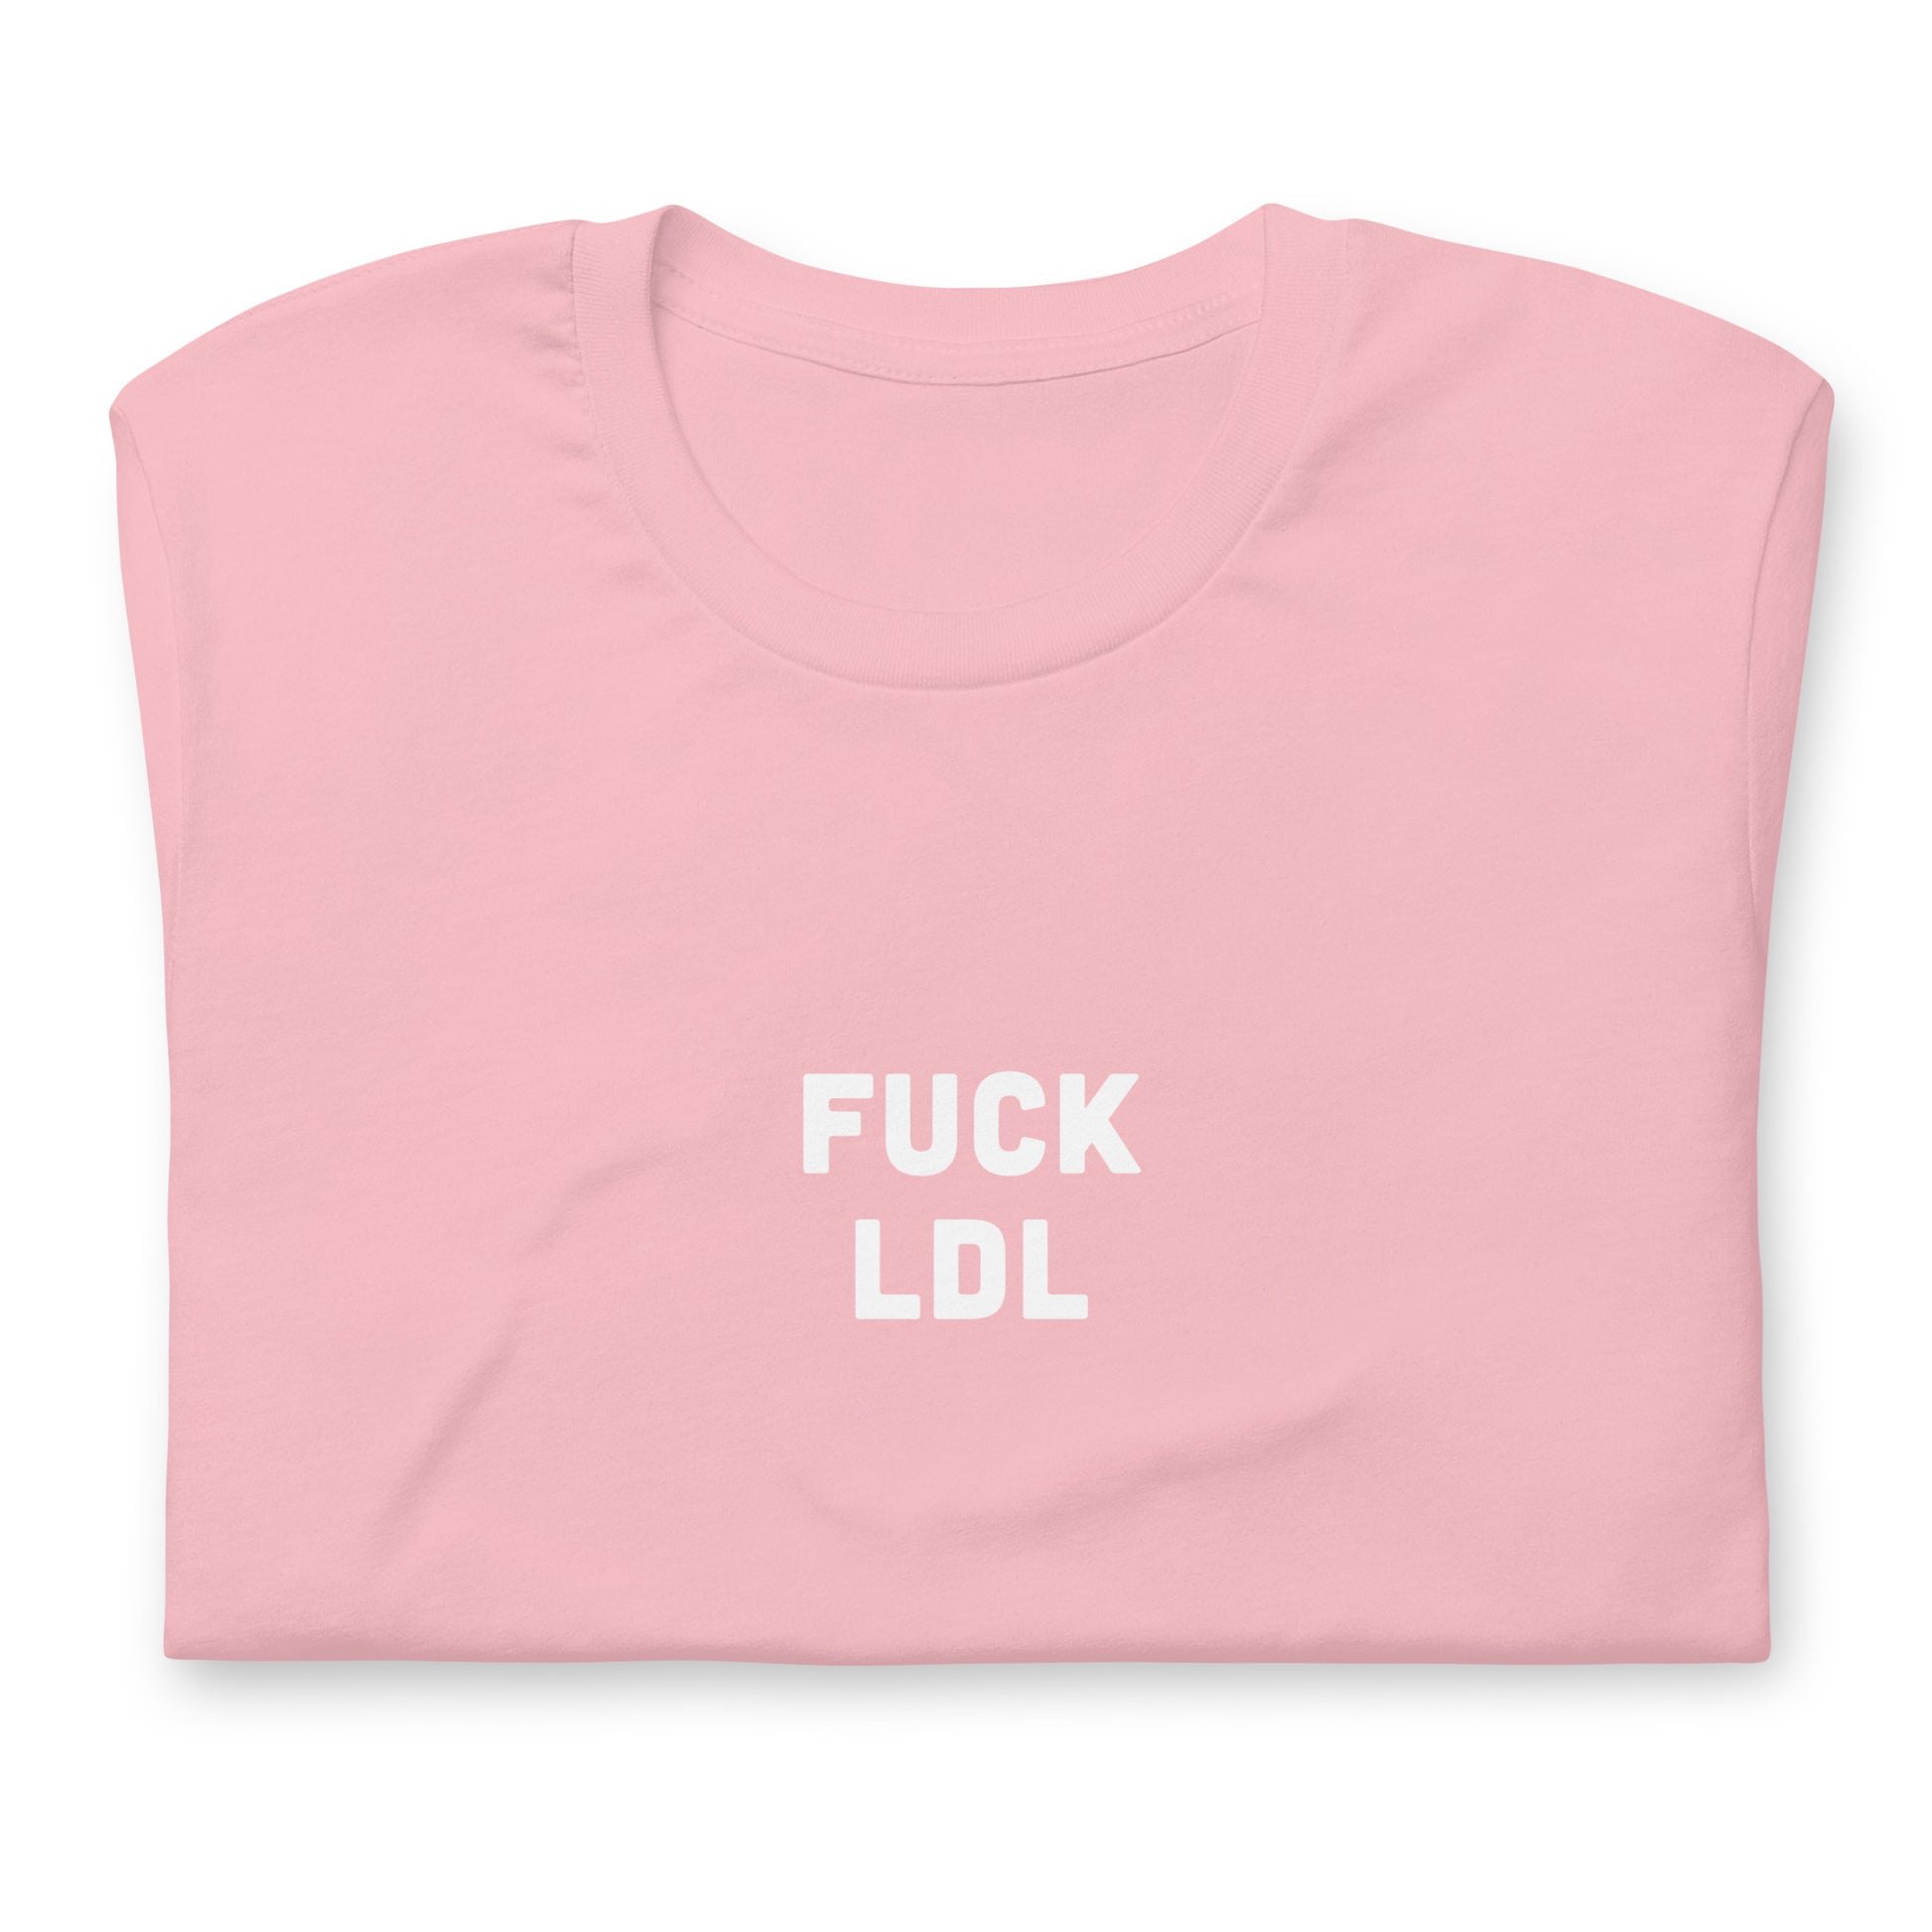 Fuck Ldl T-Shirt Size S Color Asphalt